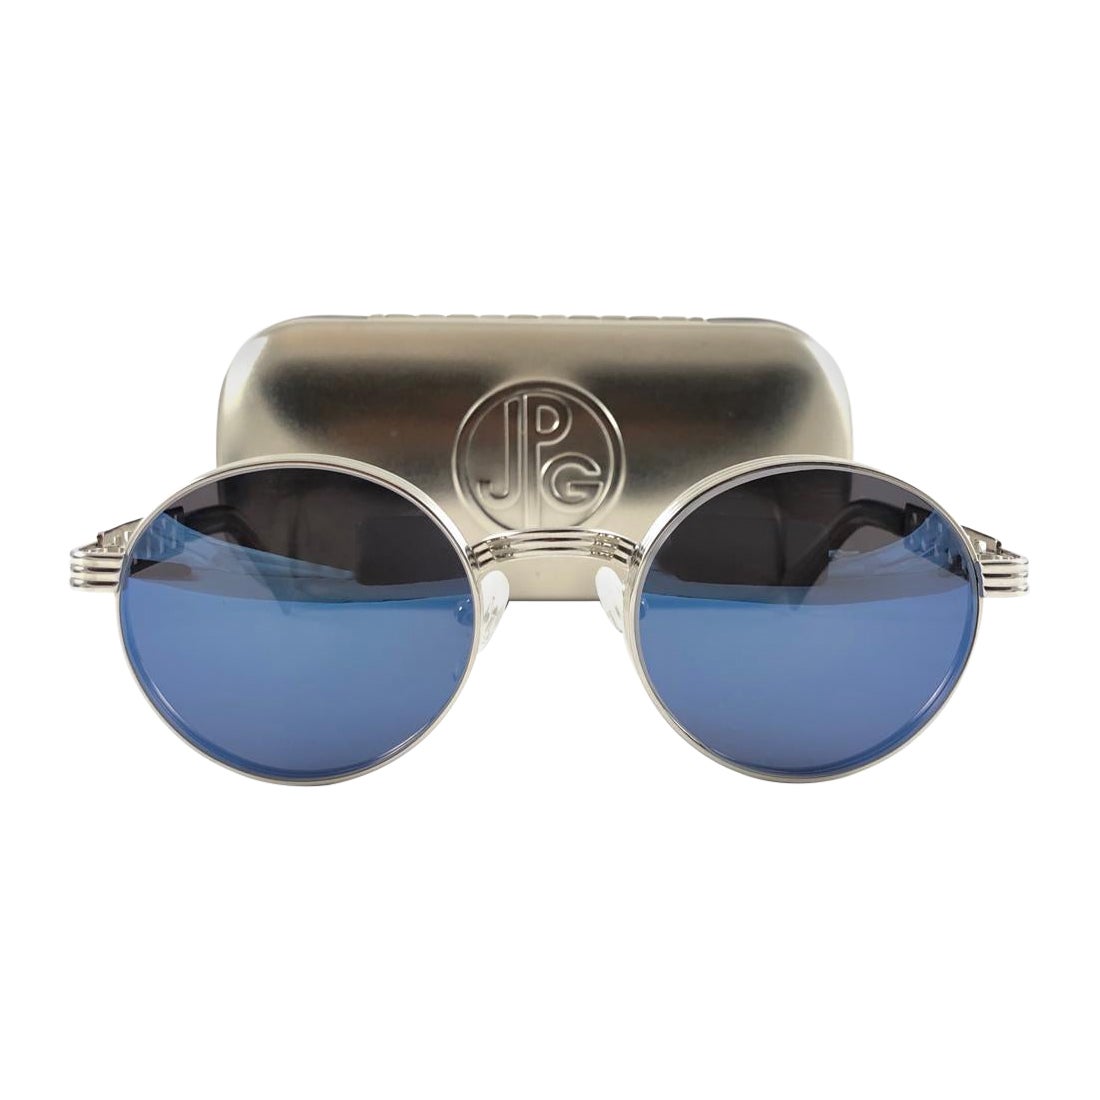 New Vintage Jean Paul Gaultier 56 0173 Round Blue Lens 1990's Sunglasses Japan For Sale